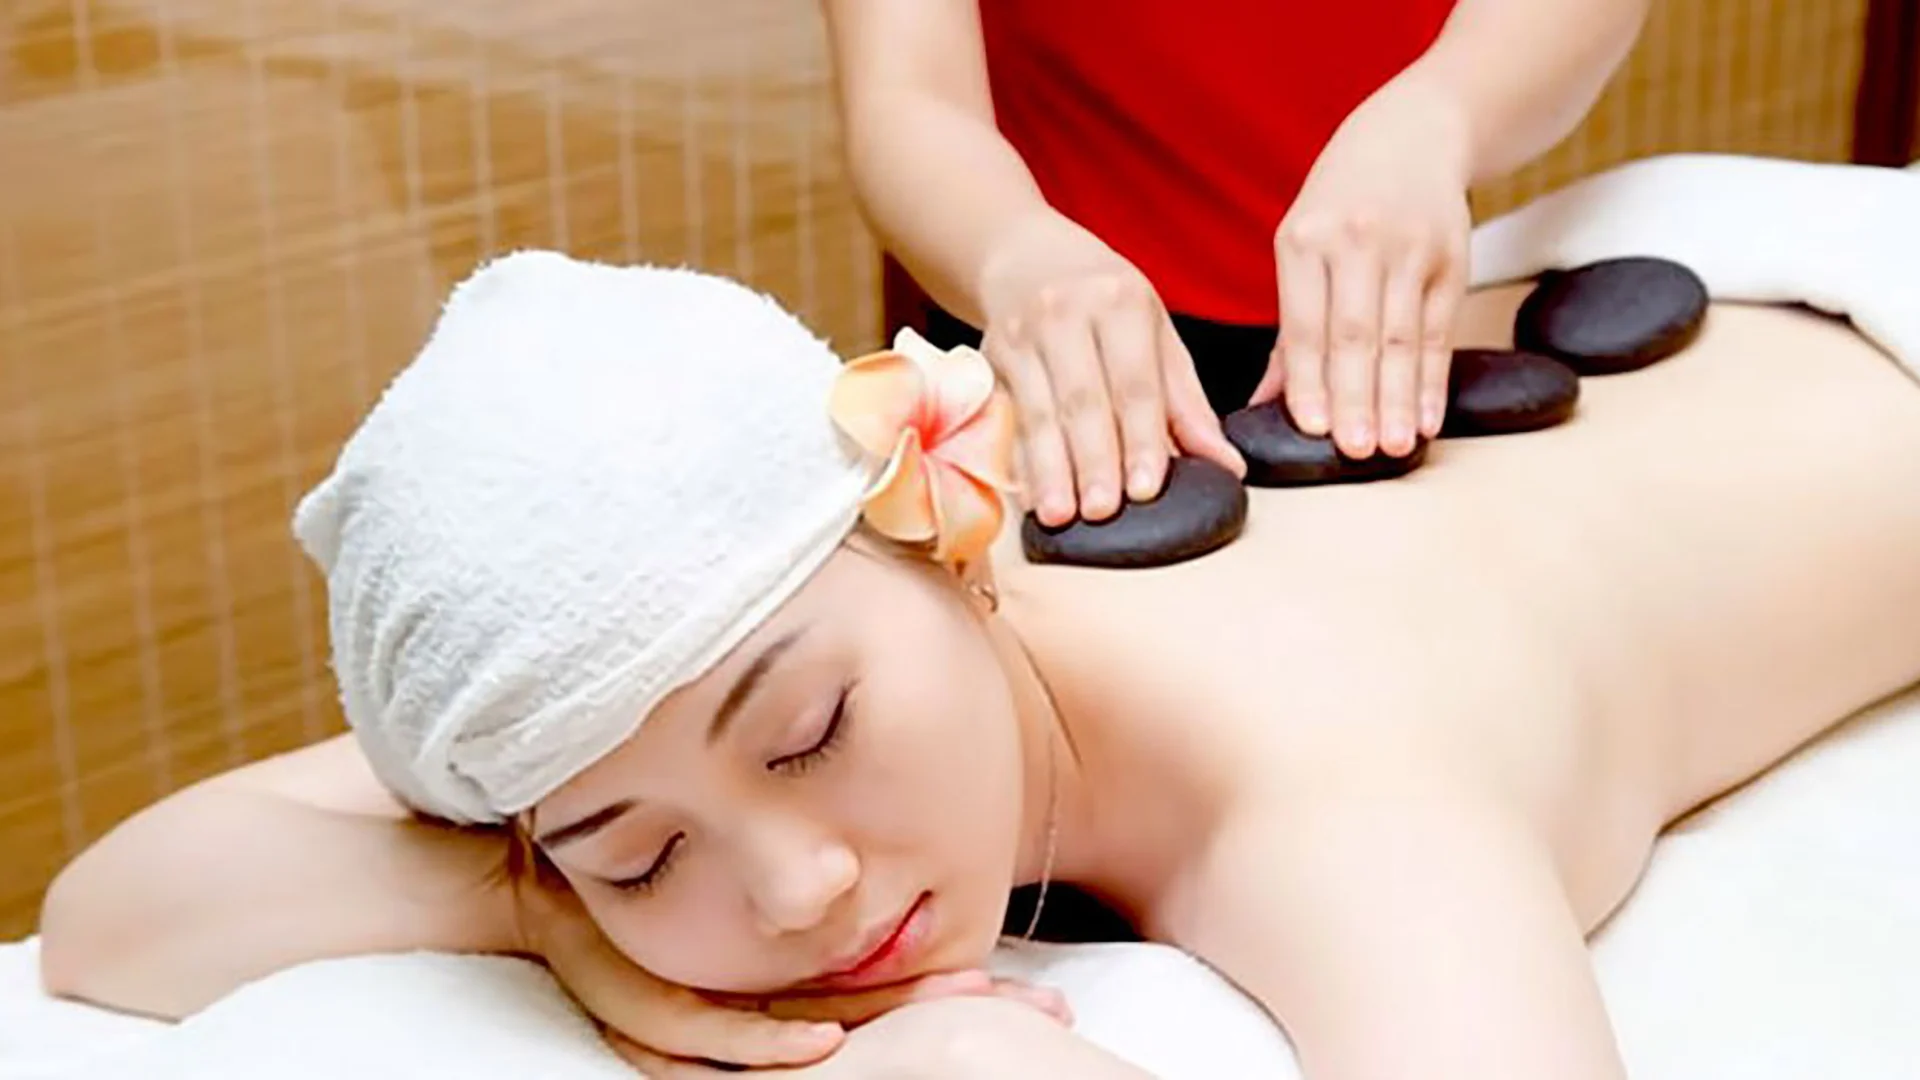 Thời gian massage tùy thuộc vào khách hàng